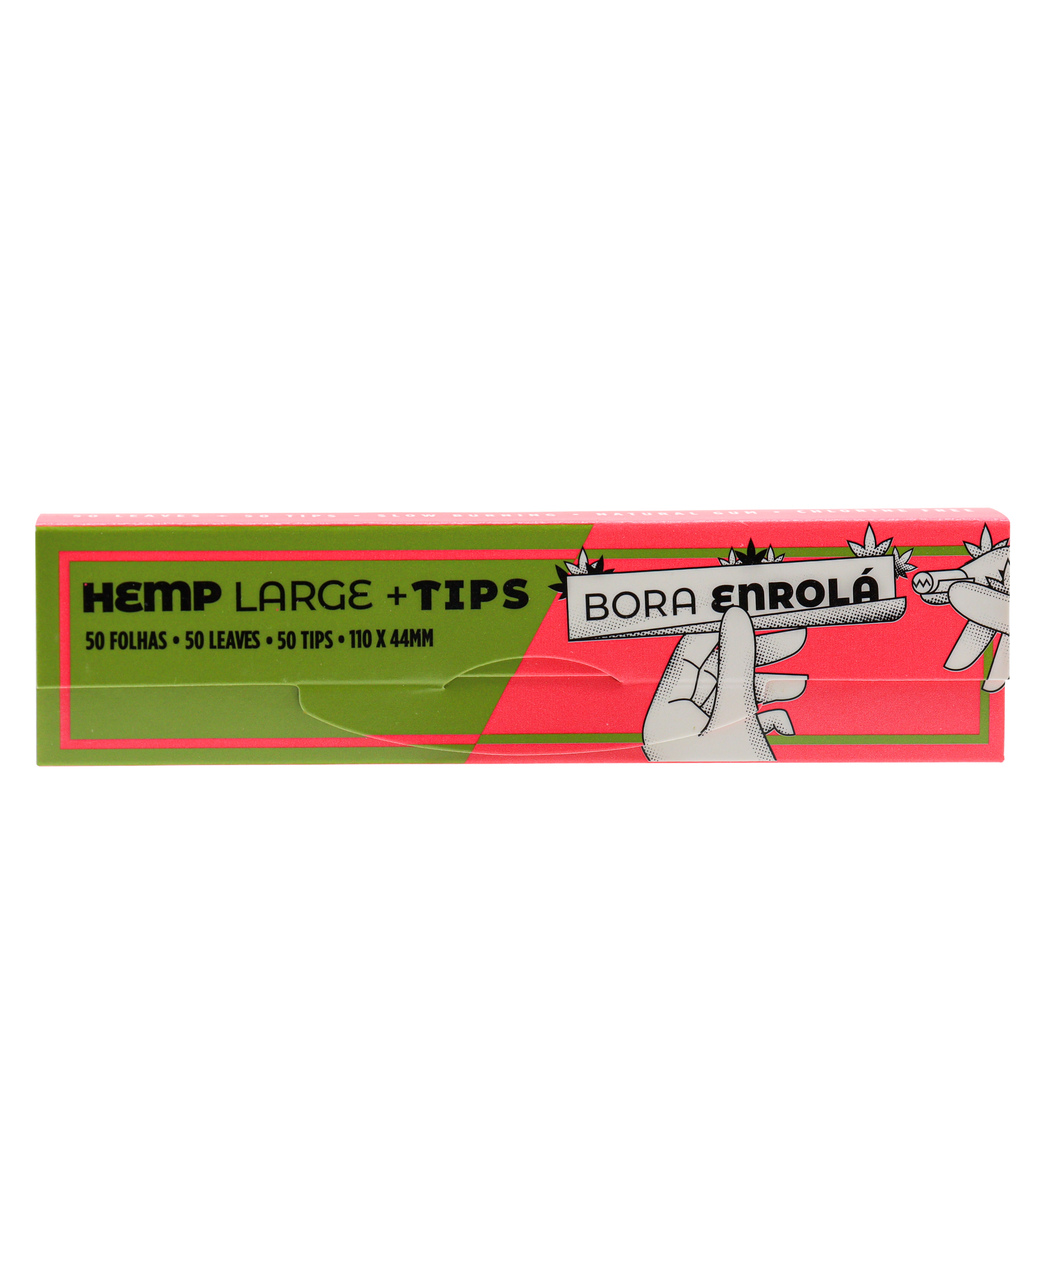 Seda Bora Enrola Hemp Large + Tips